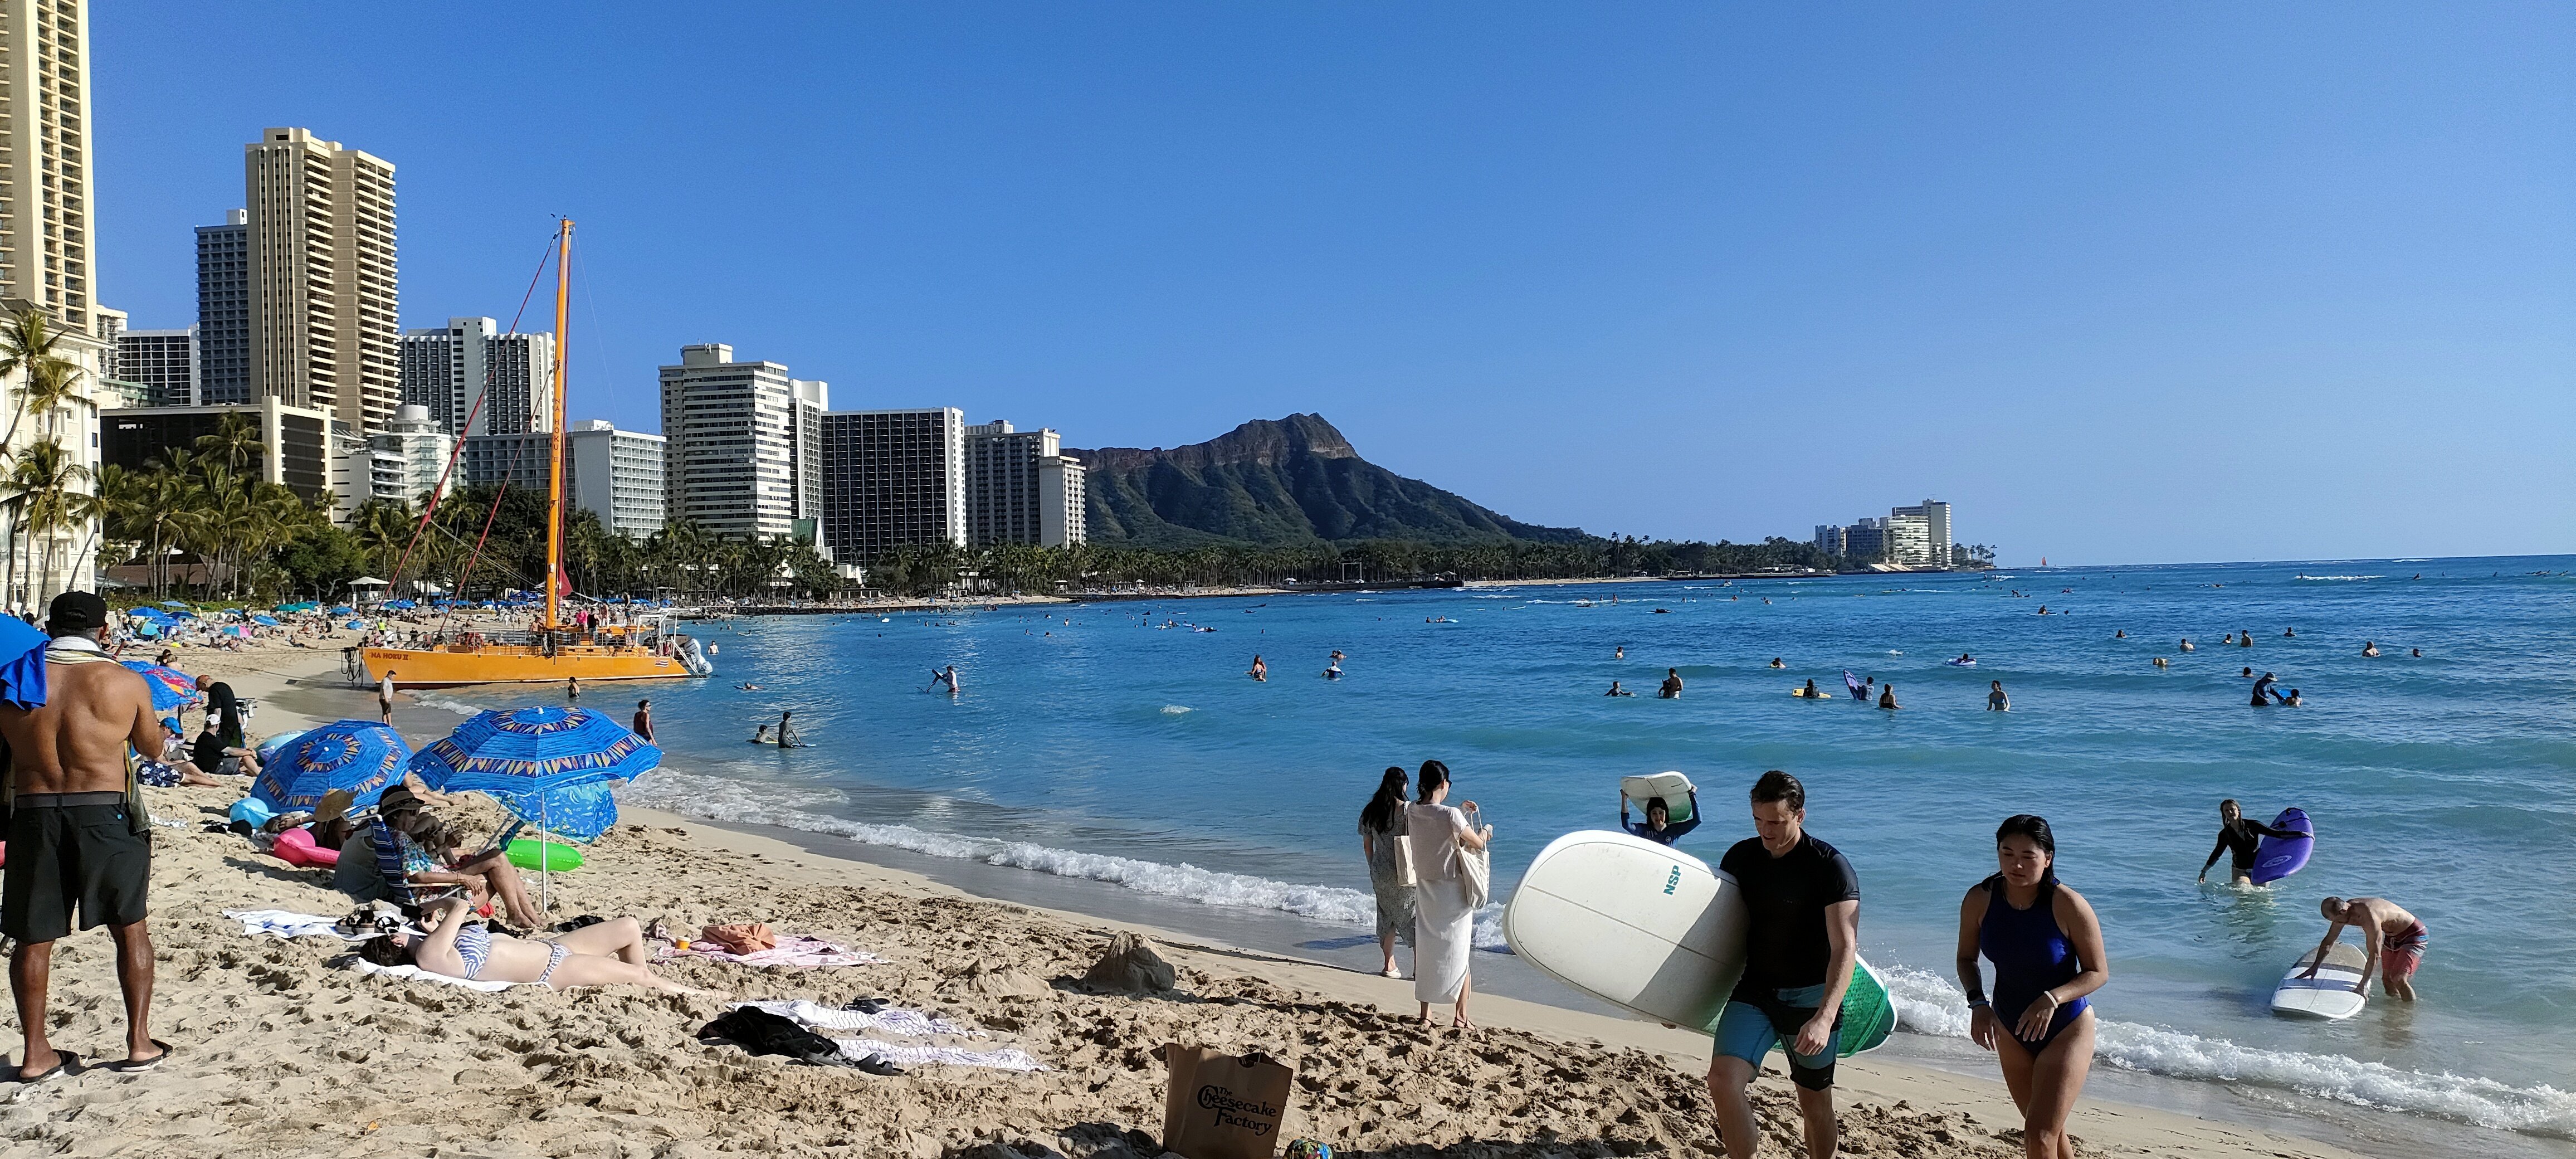 ハワイのビーチ.jpg